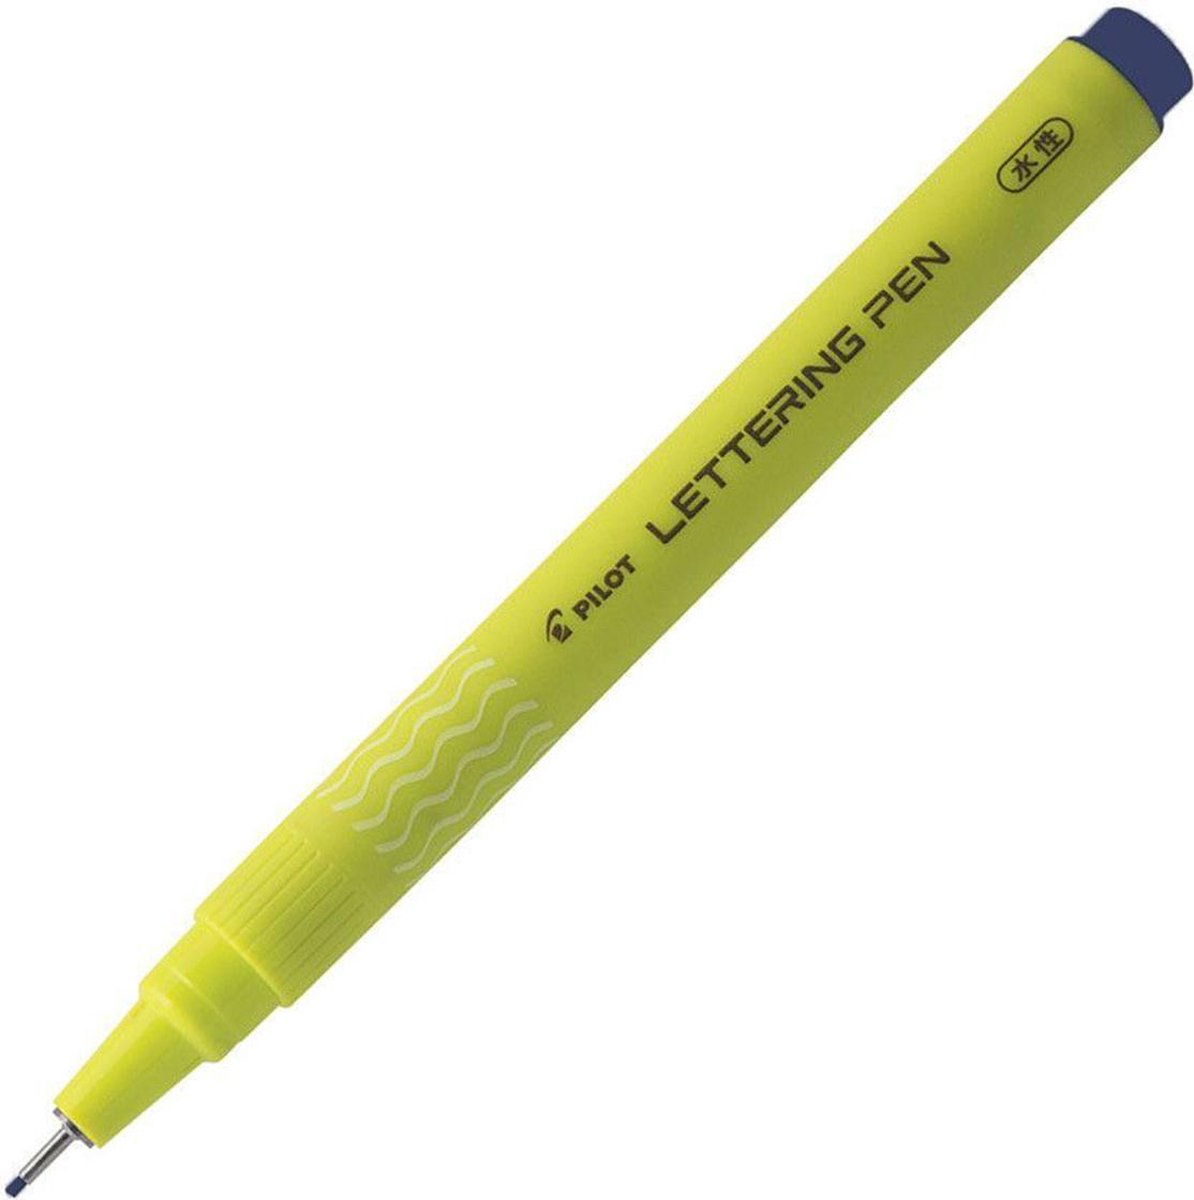 Pilot Blauwe Lettering Pen - 1.0mm Fine - Kalligrafie & handlettering pen